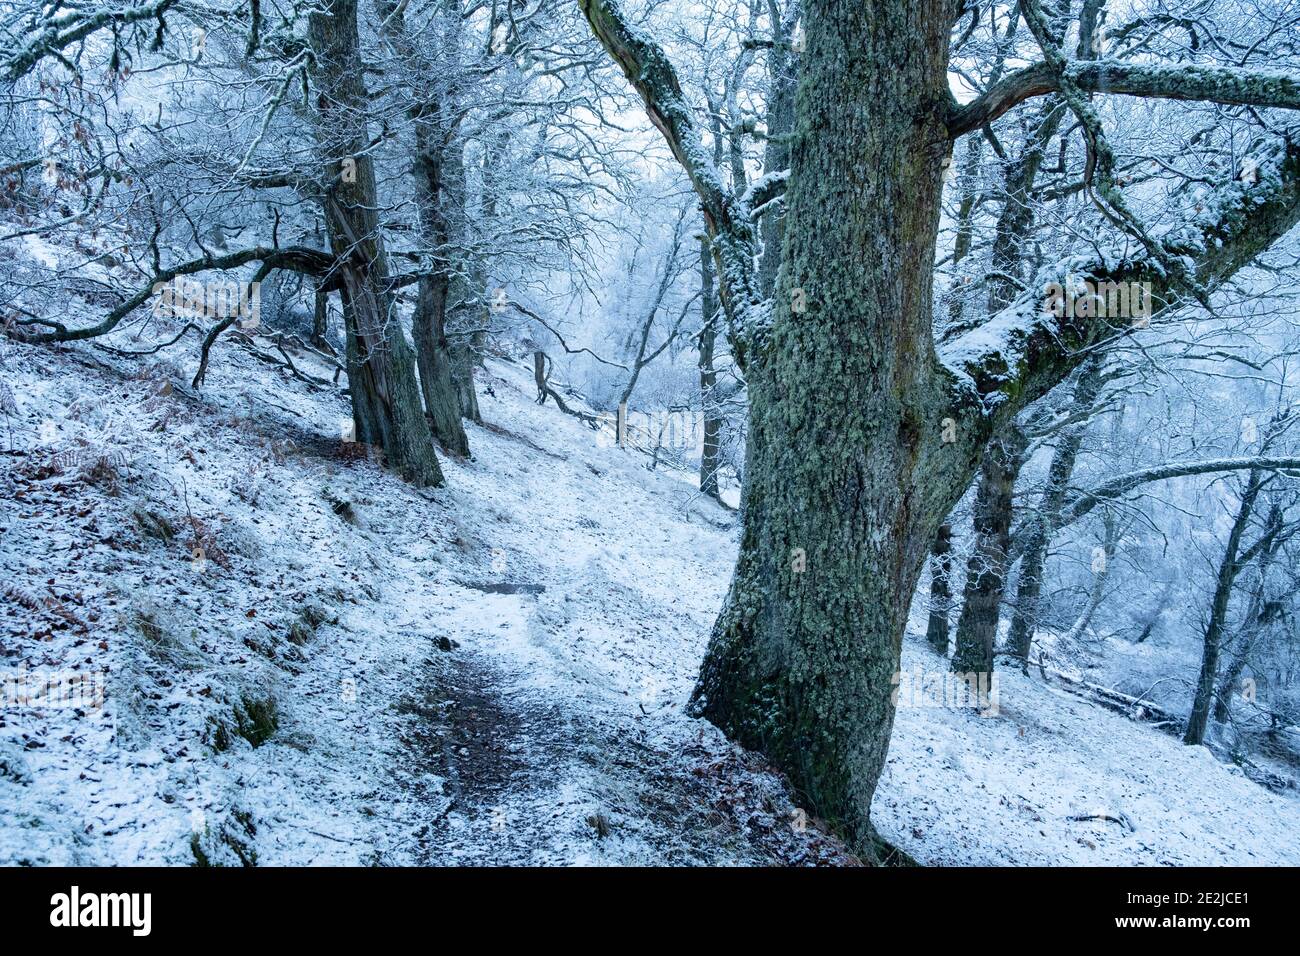 Il tempo invernale ha rivestito le querce sisal del Bosco di Dhiavach vicino a Drumnadrochit, Scozia in una coperta innevata. Foto Stock